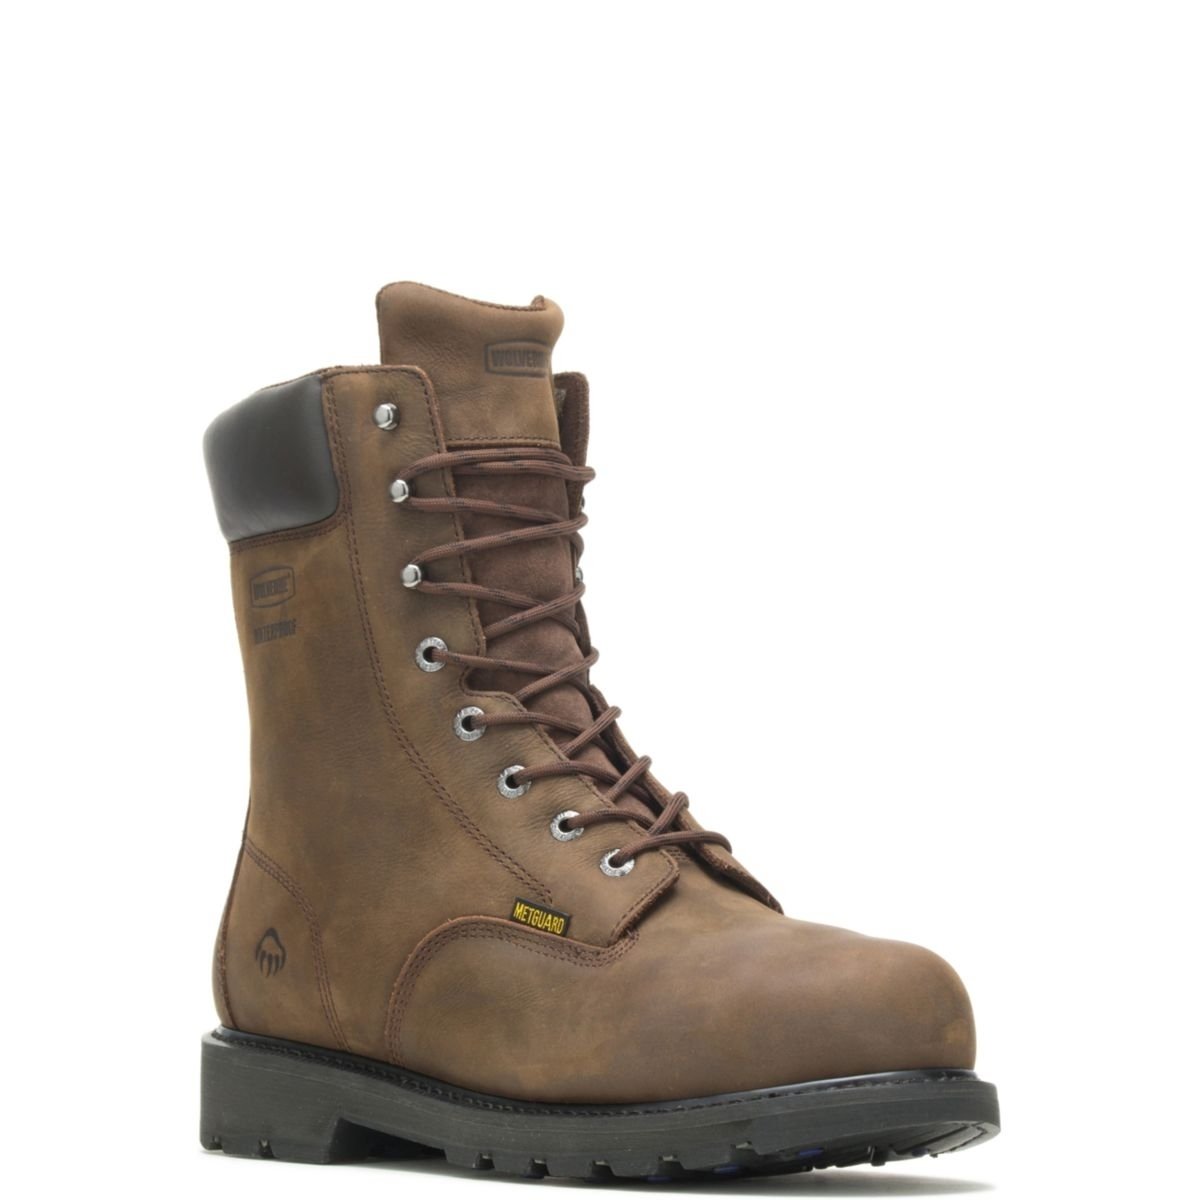 WOLVERINE Men's McKay 8 Waterproof Steel Toe Work Boot Brown - W05680 10 BROWN - BROWN, 10 X-Wide